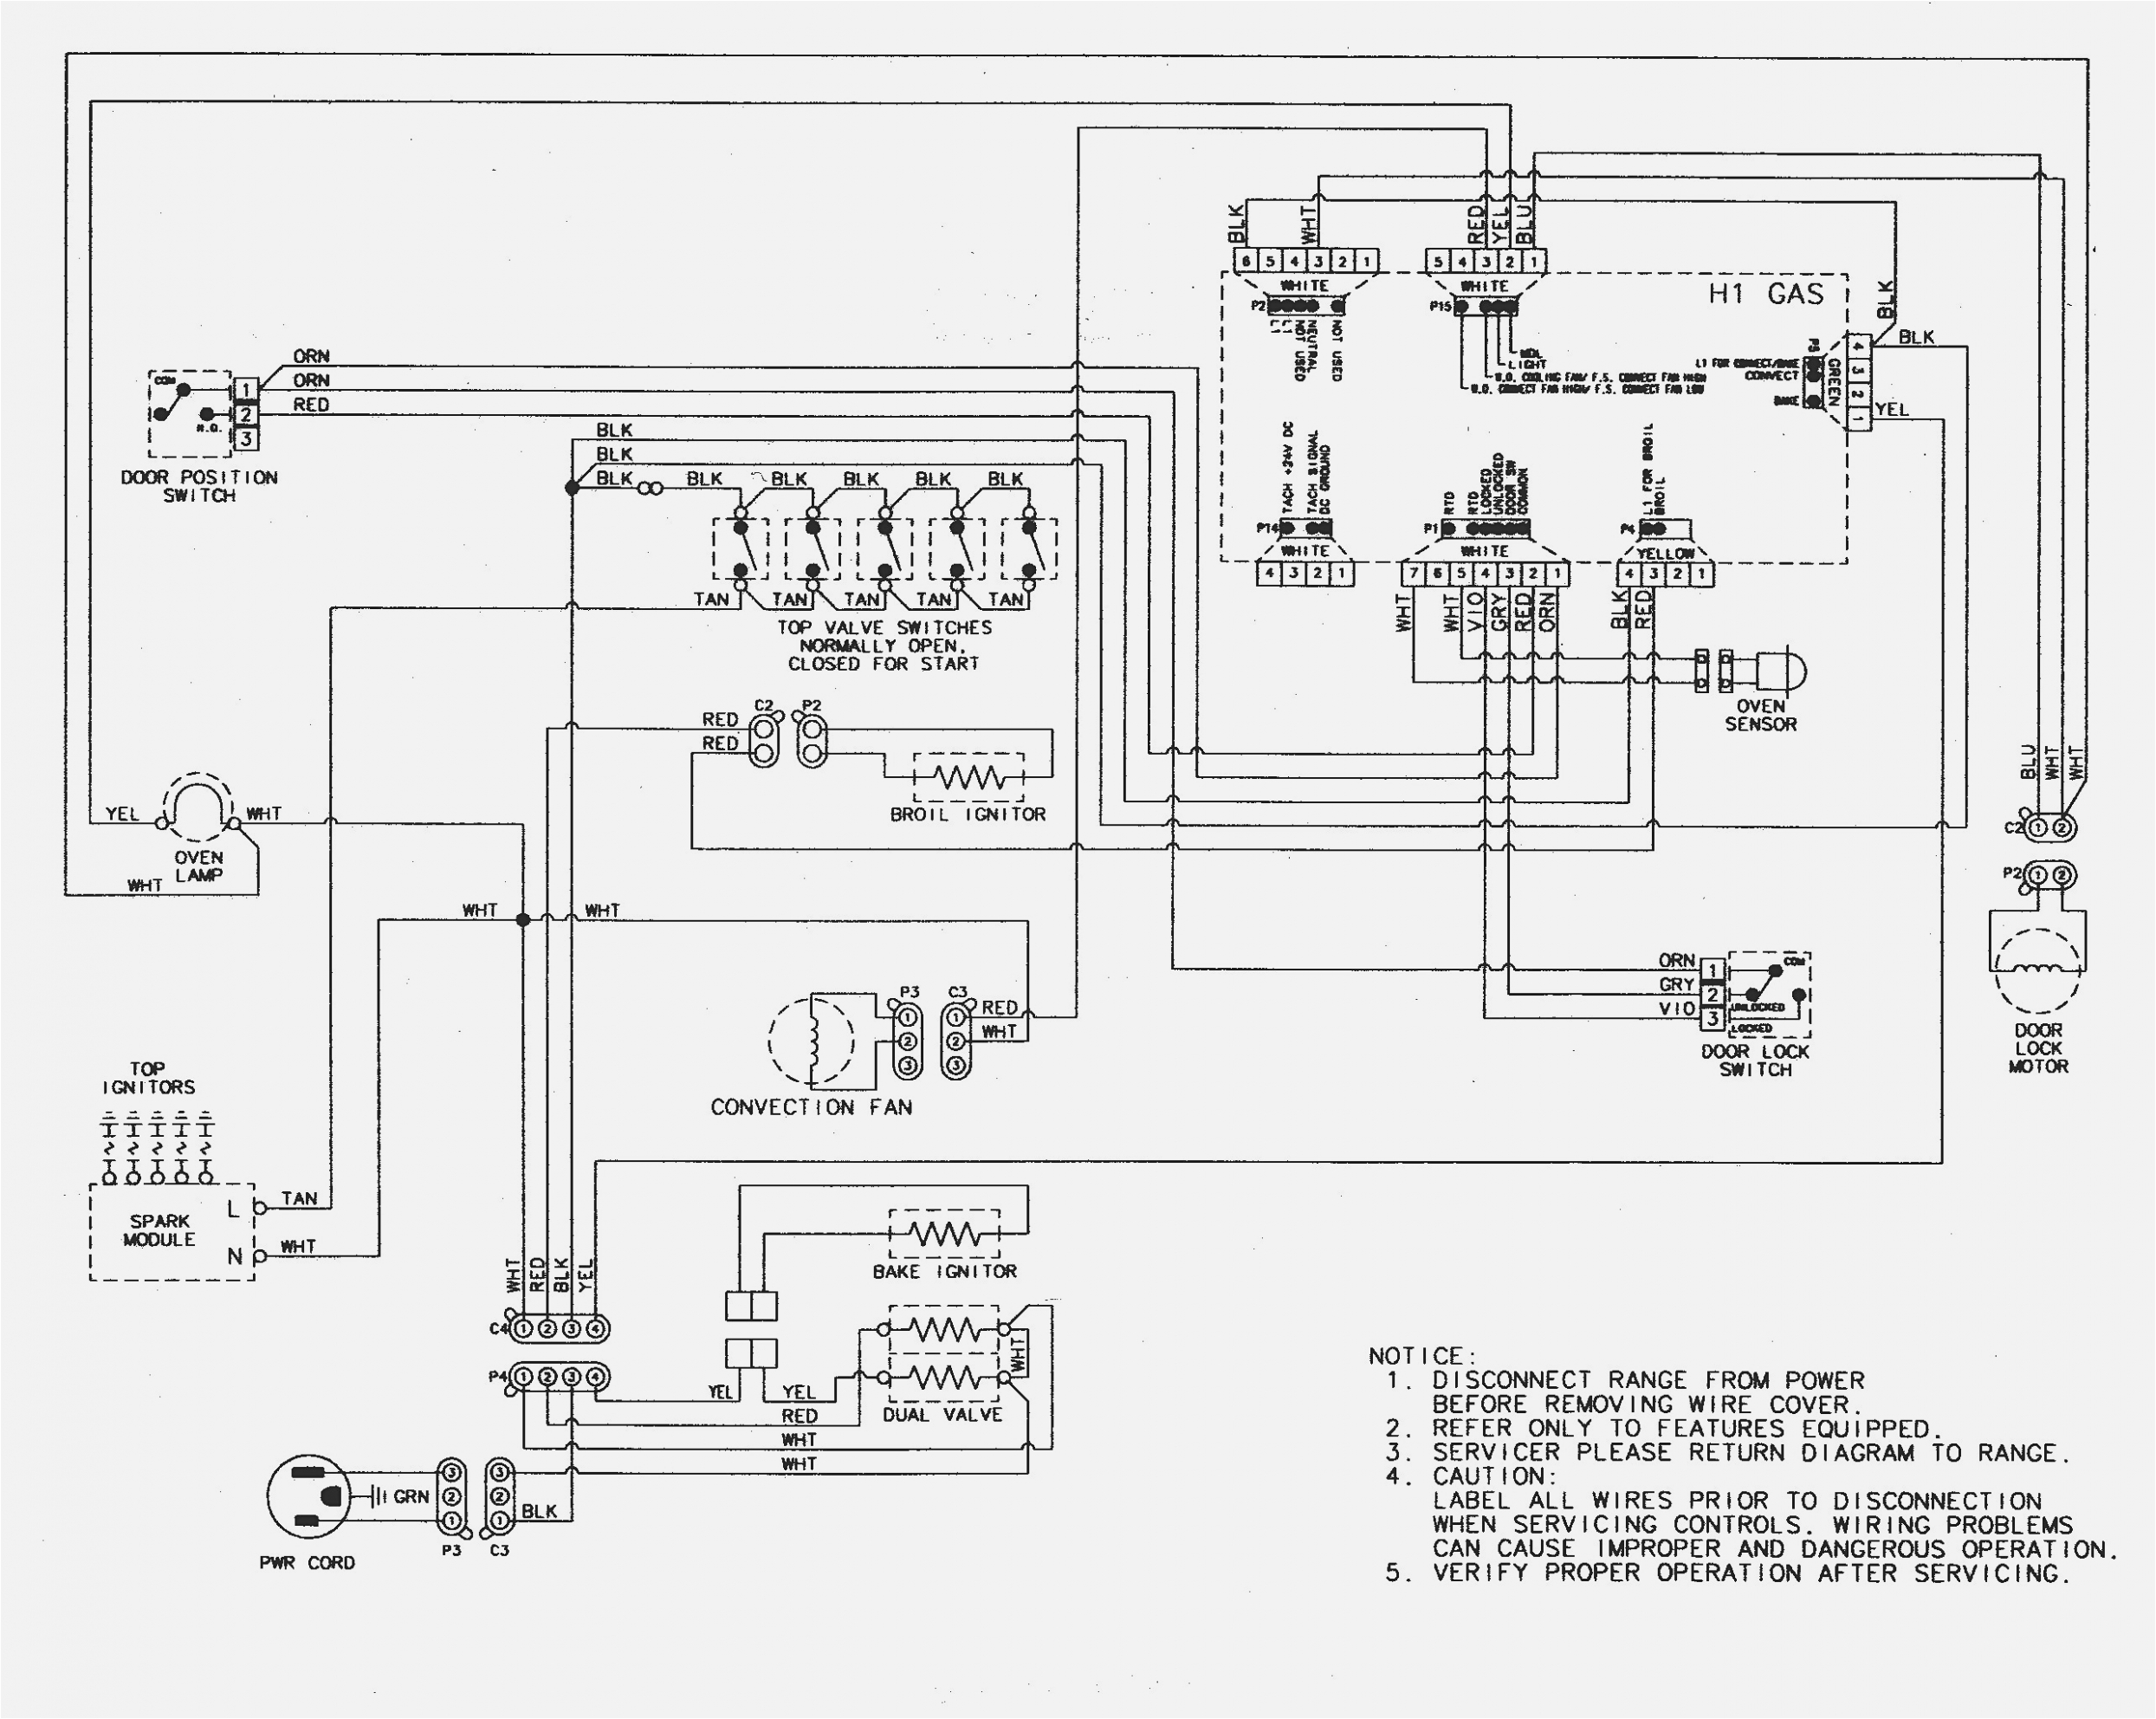 open range wiring diagram wiring diagrams posts open range rv wiring diagram open range wiring diagram